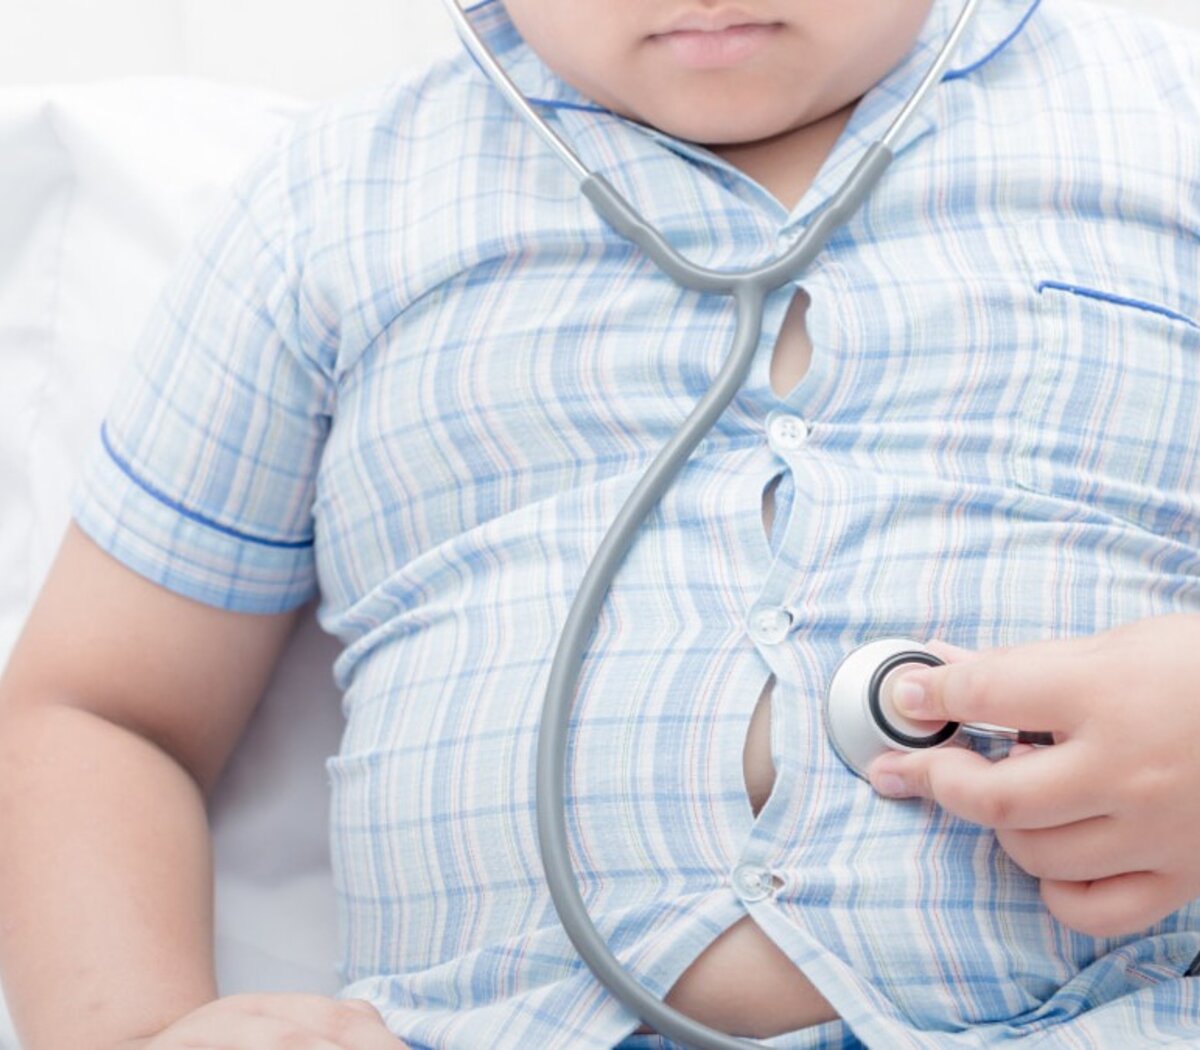 Obesidad infantil: por qué Argentina tiene el índice más alto en Sudamérica | Proponen reducir el límite de grasas trans en alimentos | Página|12